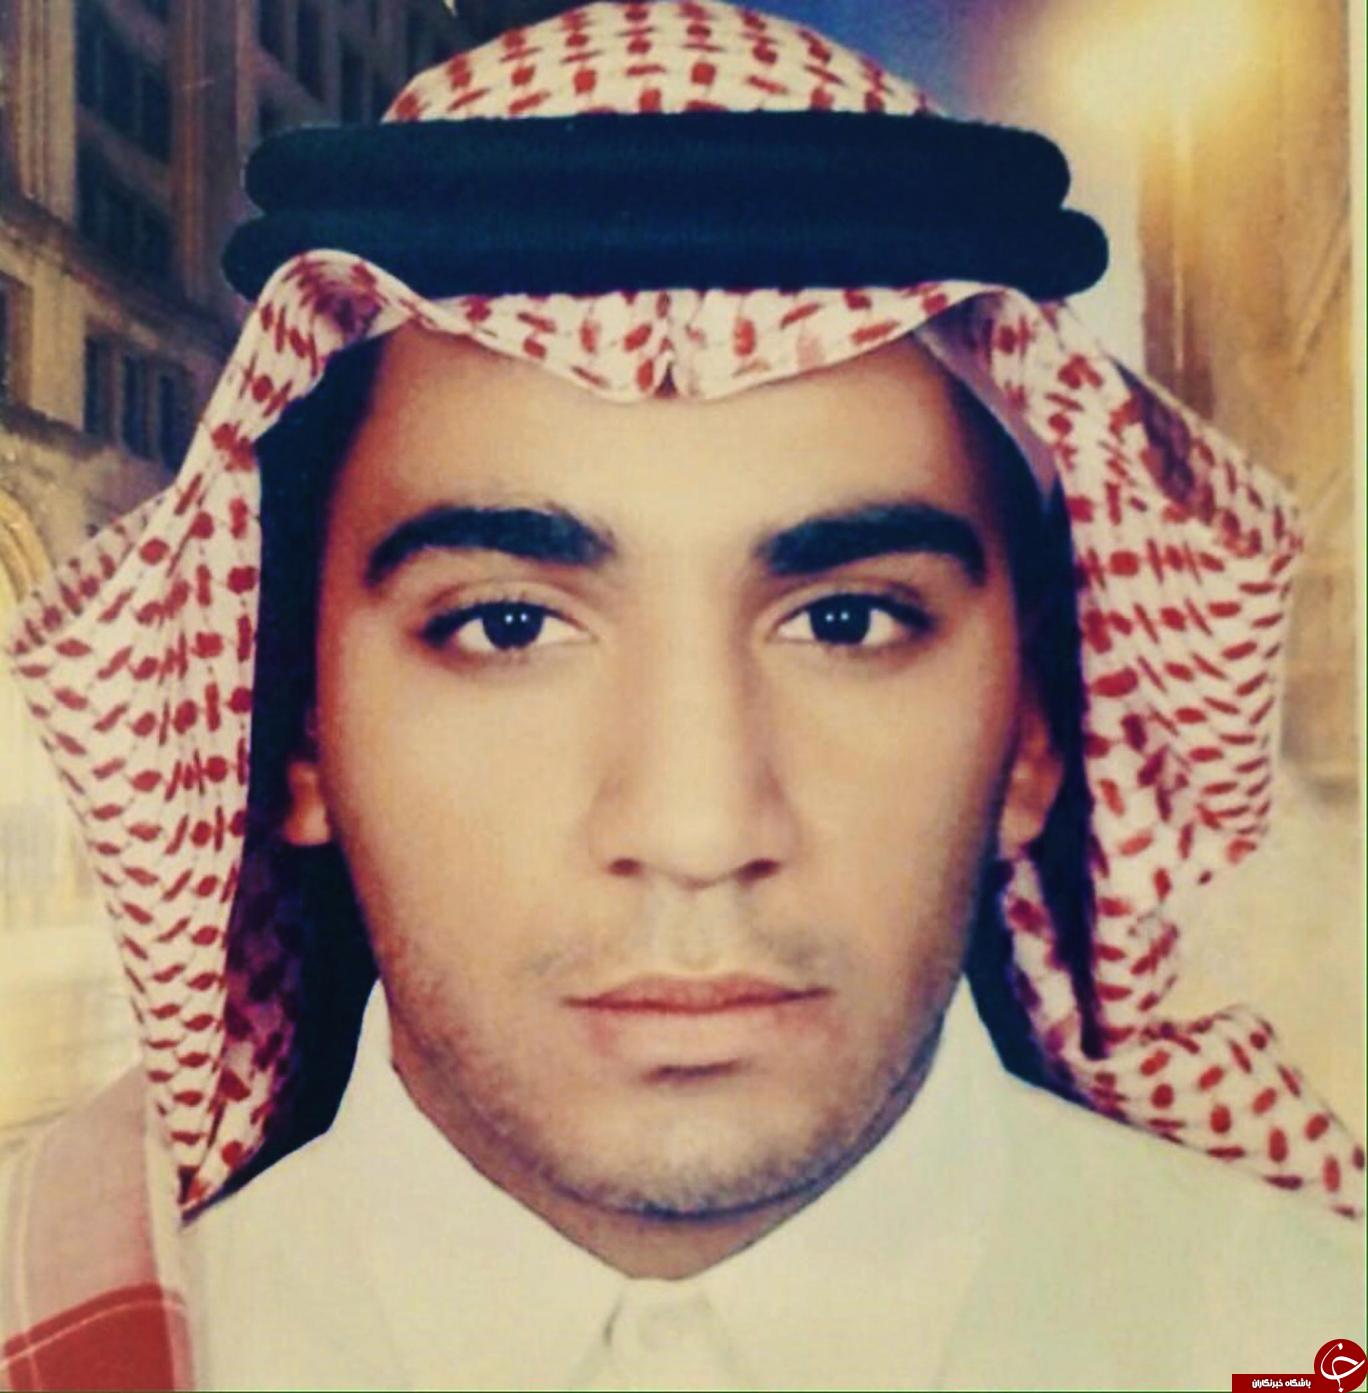 رژیم آل سعود در پی گردن زدن یک جوان ۲۳ ساله شیعه معلول است